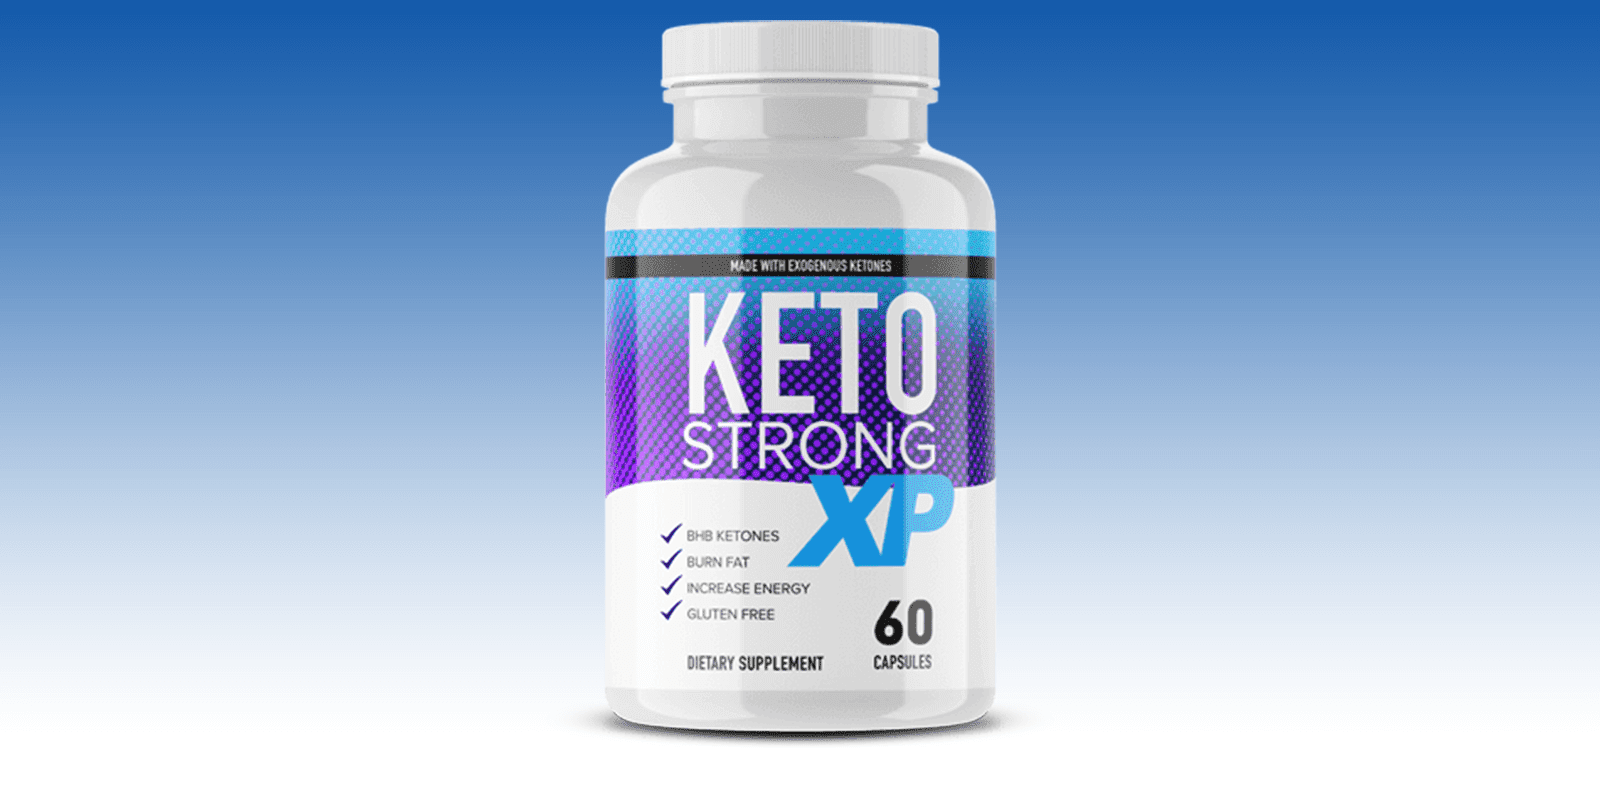 Keto Strong XP Reviews - A Natural Formula For A Healthy Weight Loss!